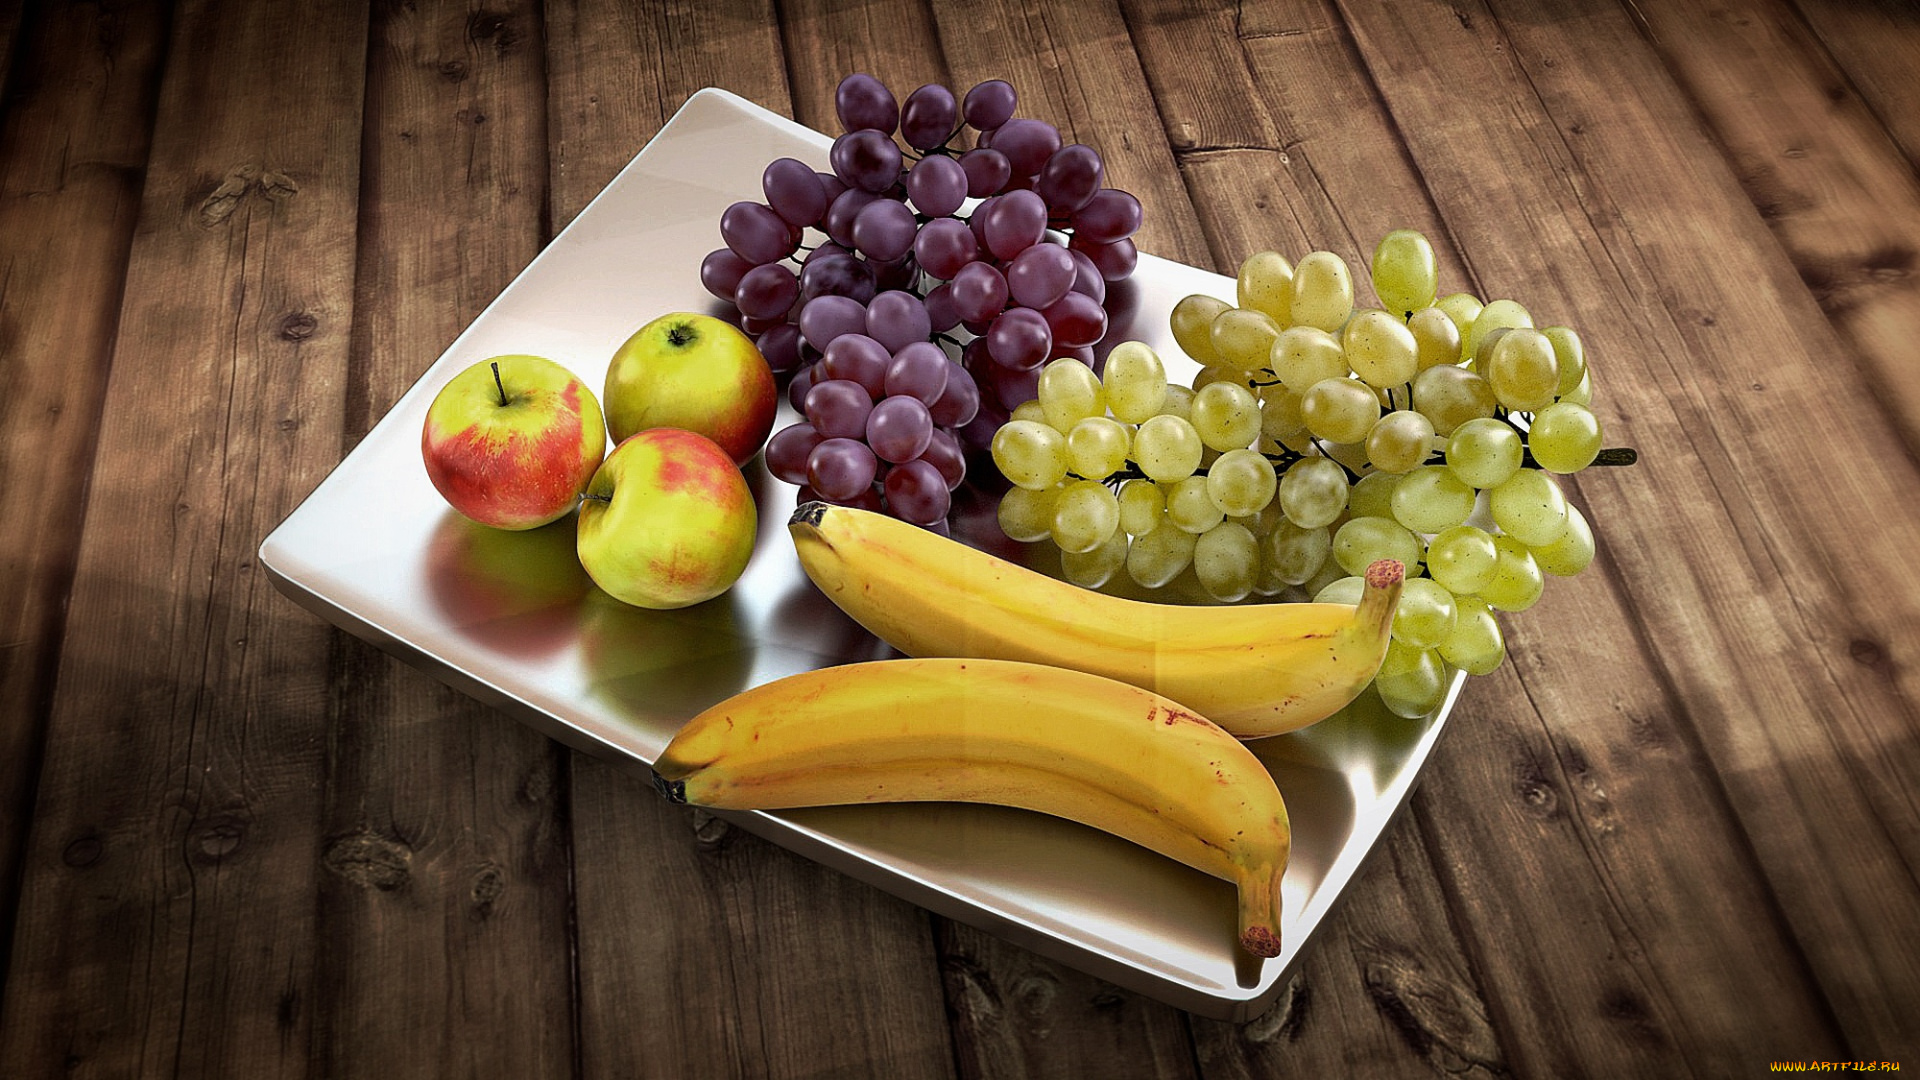 еда, фрукты, , ягоды, поднос, бананы, виноград, яблоки